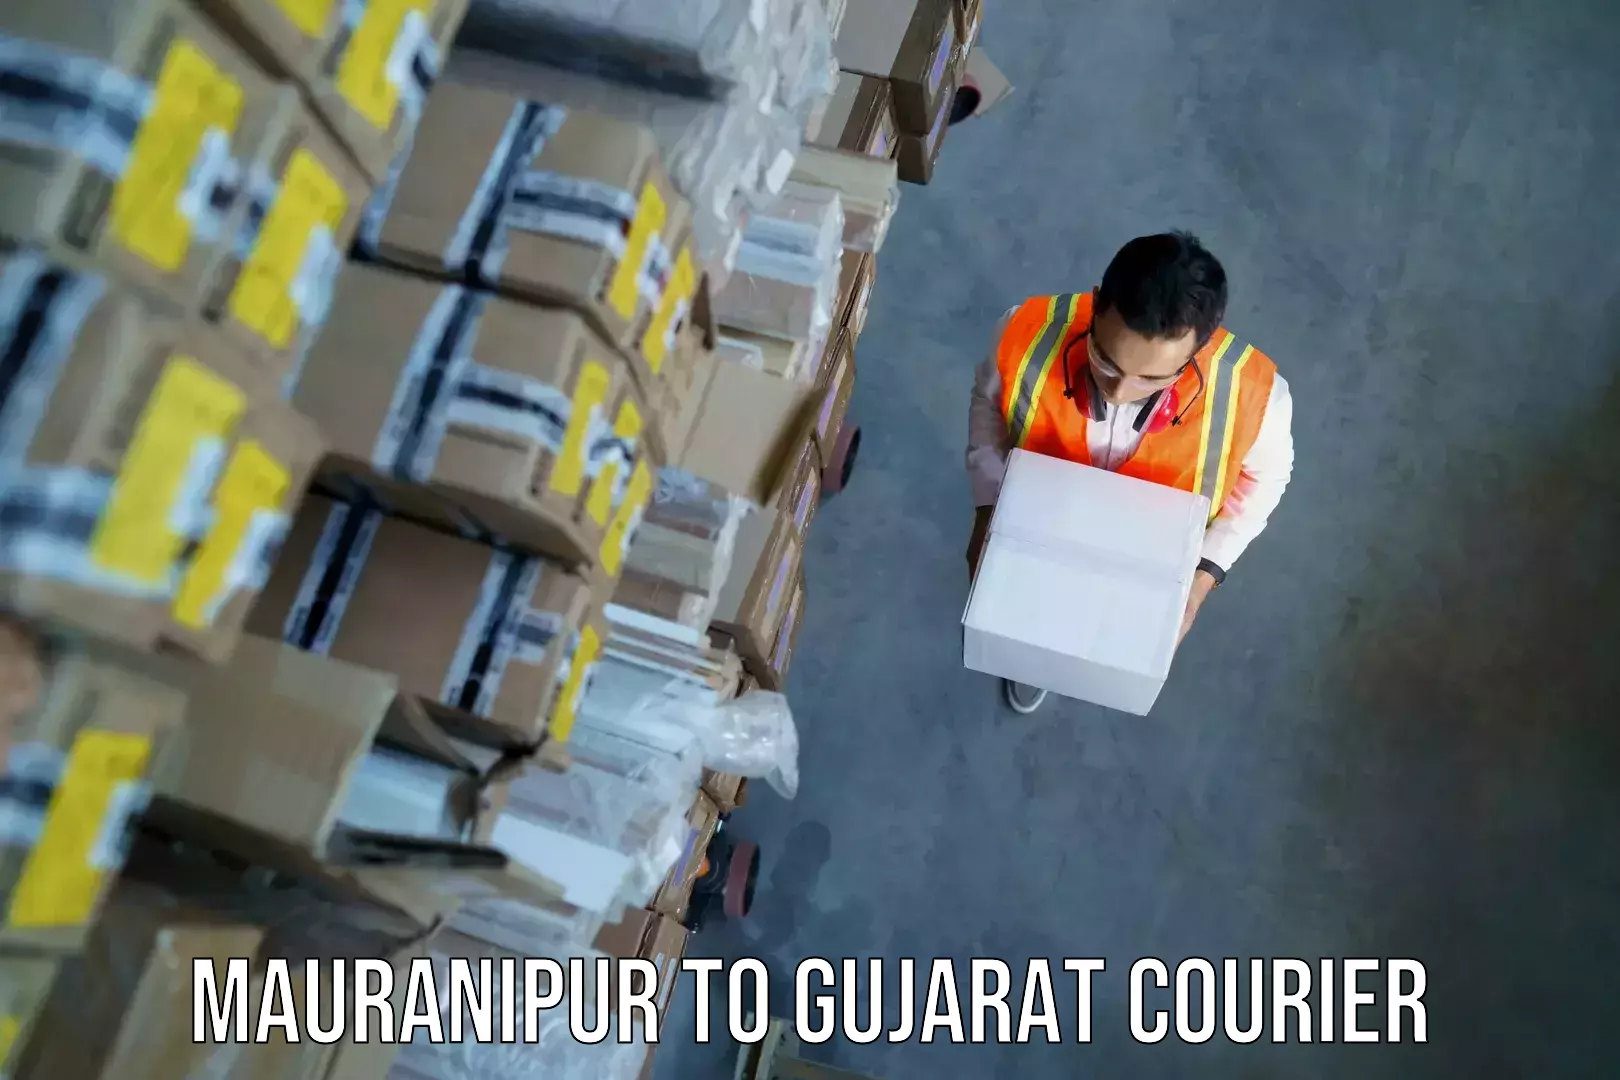 Baggage shipping service Mauranipur to Gandhinagar